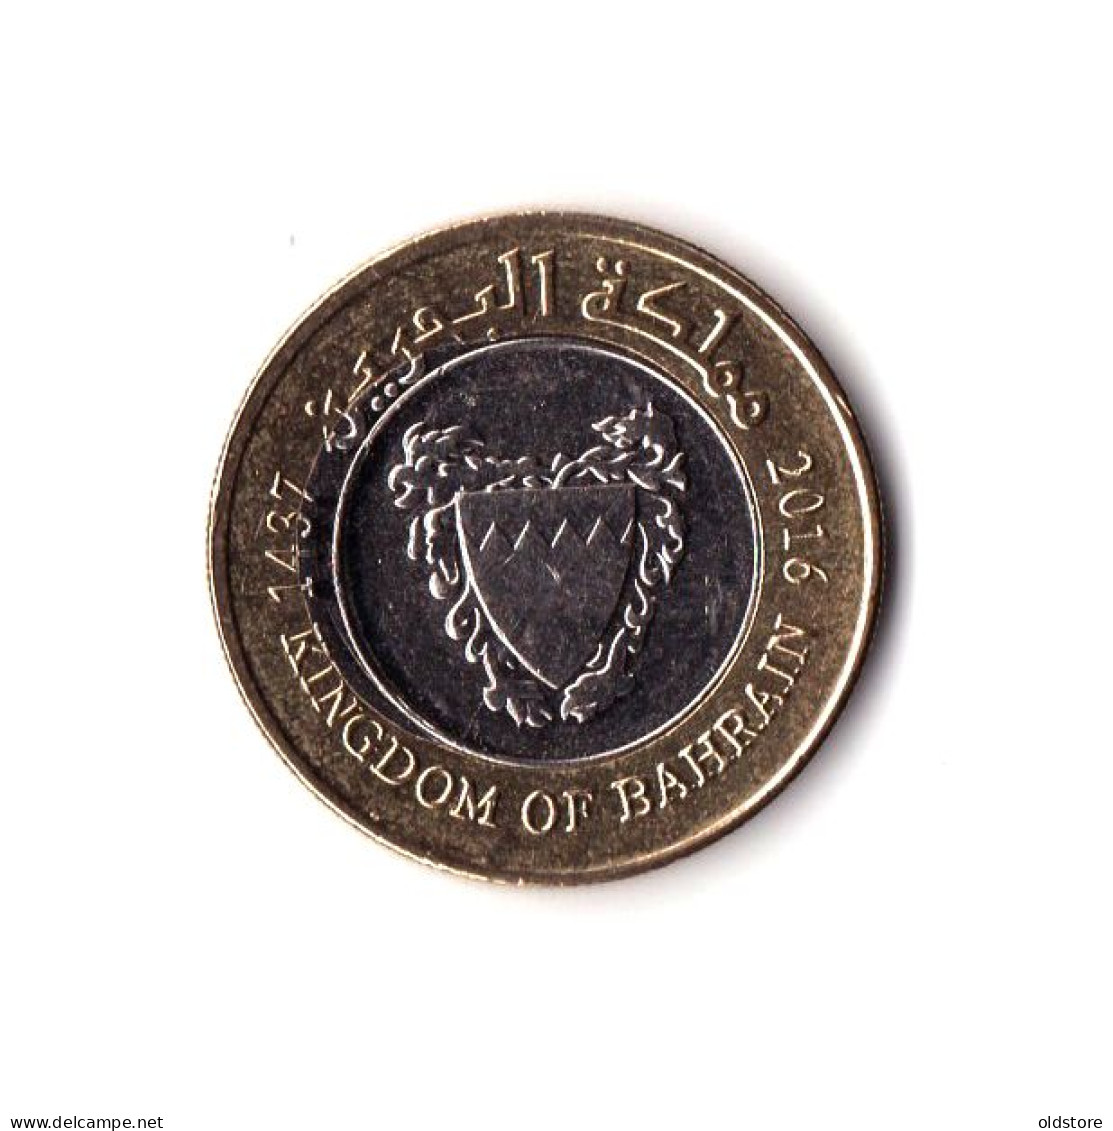 Bahrain Coins - Kingdom Of Bahrain 100 Fils Old Rare ERROR Coin - ND 2016 #5 - Bahrain